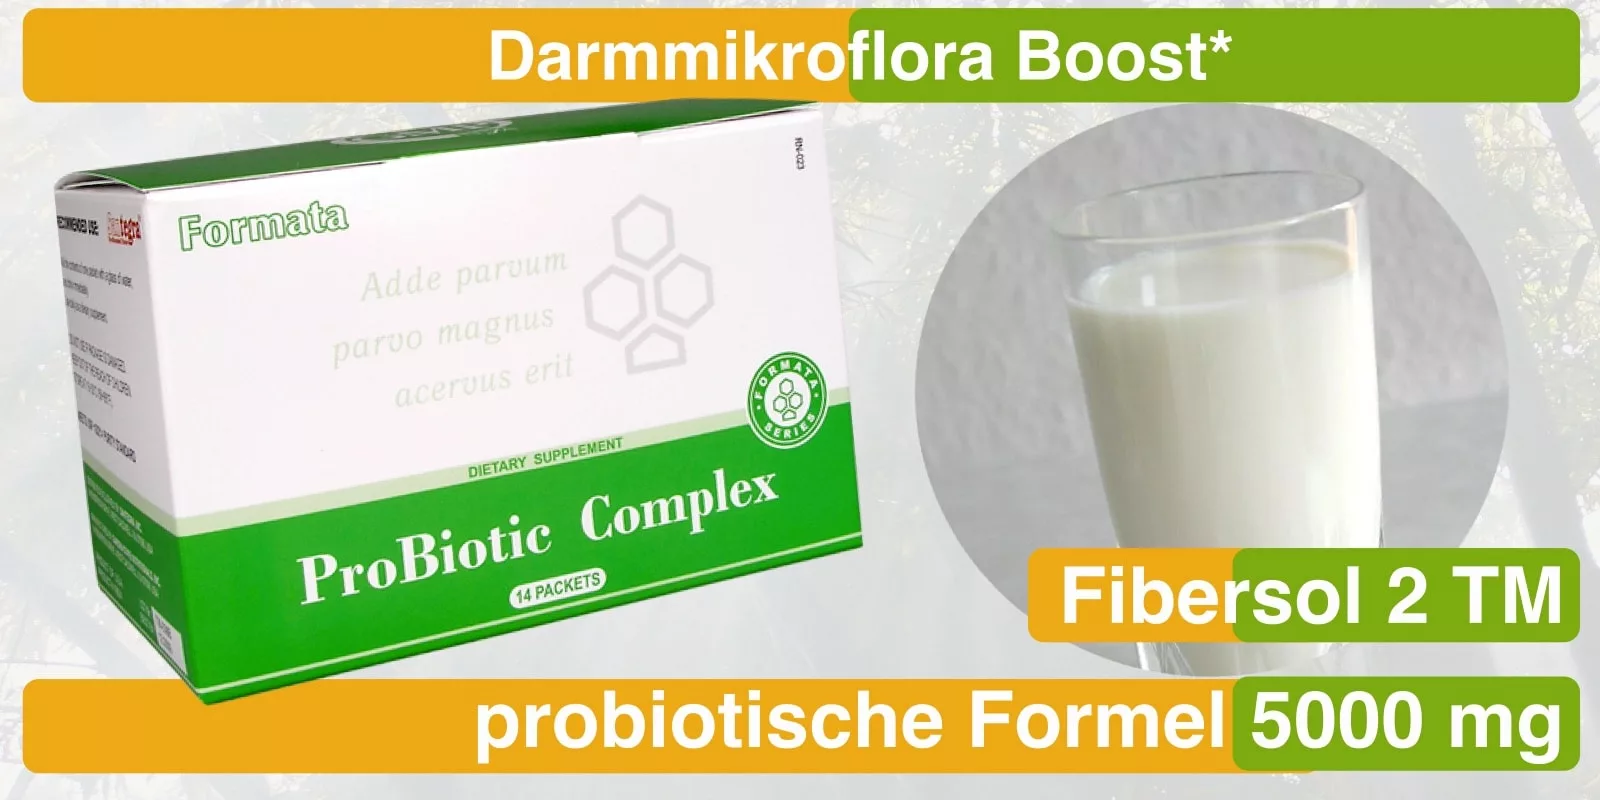 LactoBi probiotic Komplex: Der Boost für eine gesunde Darmflora